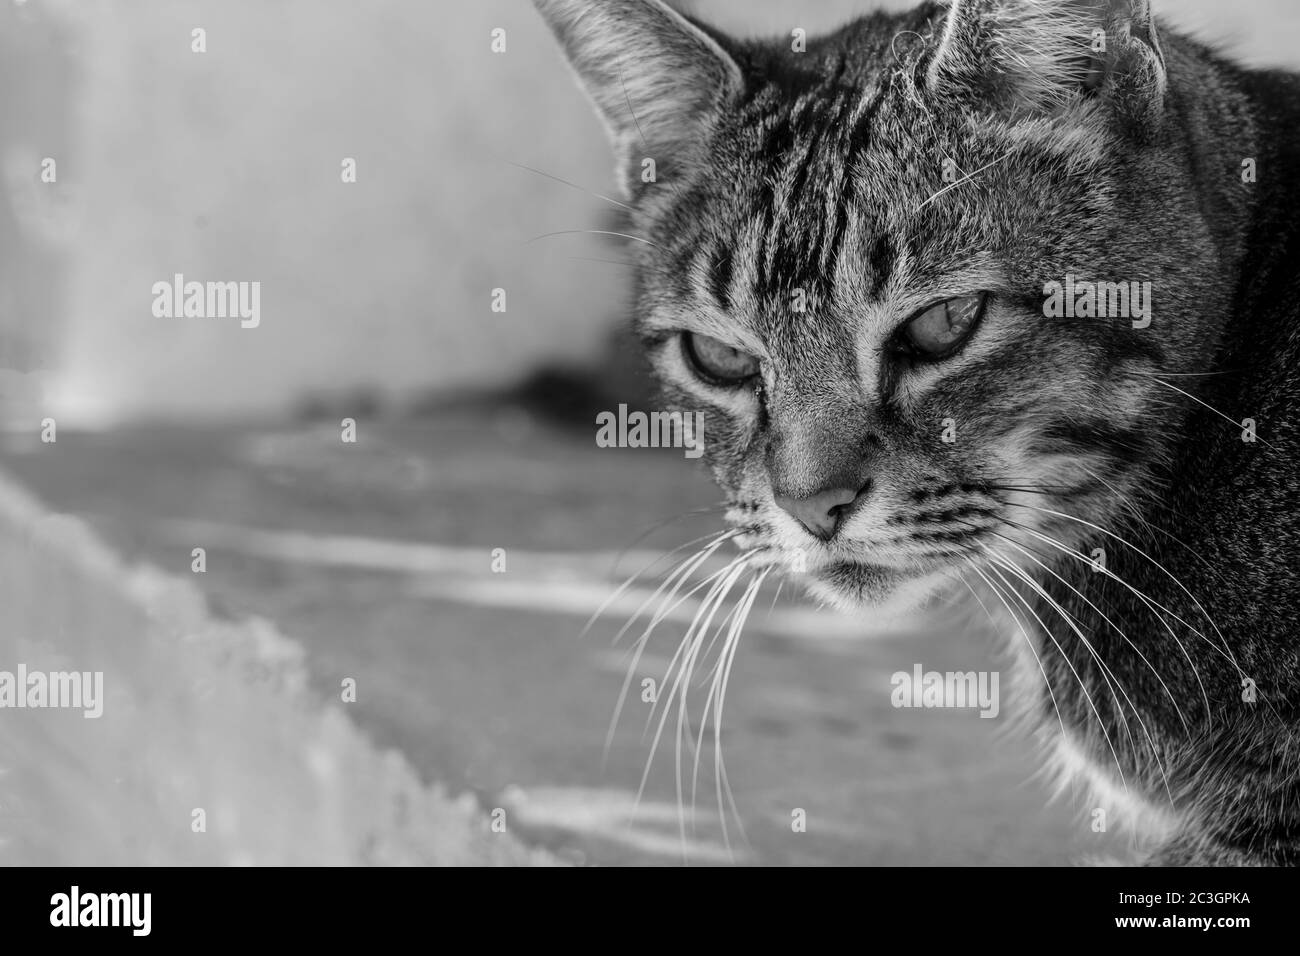 Magnifique chat Tabby avec de longs whiskers regardant la caméra, Harrogate, North Yorkshire, Angleterre, Royaume-Uni. Banque D'Images